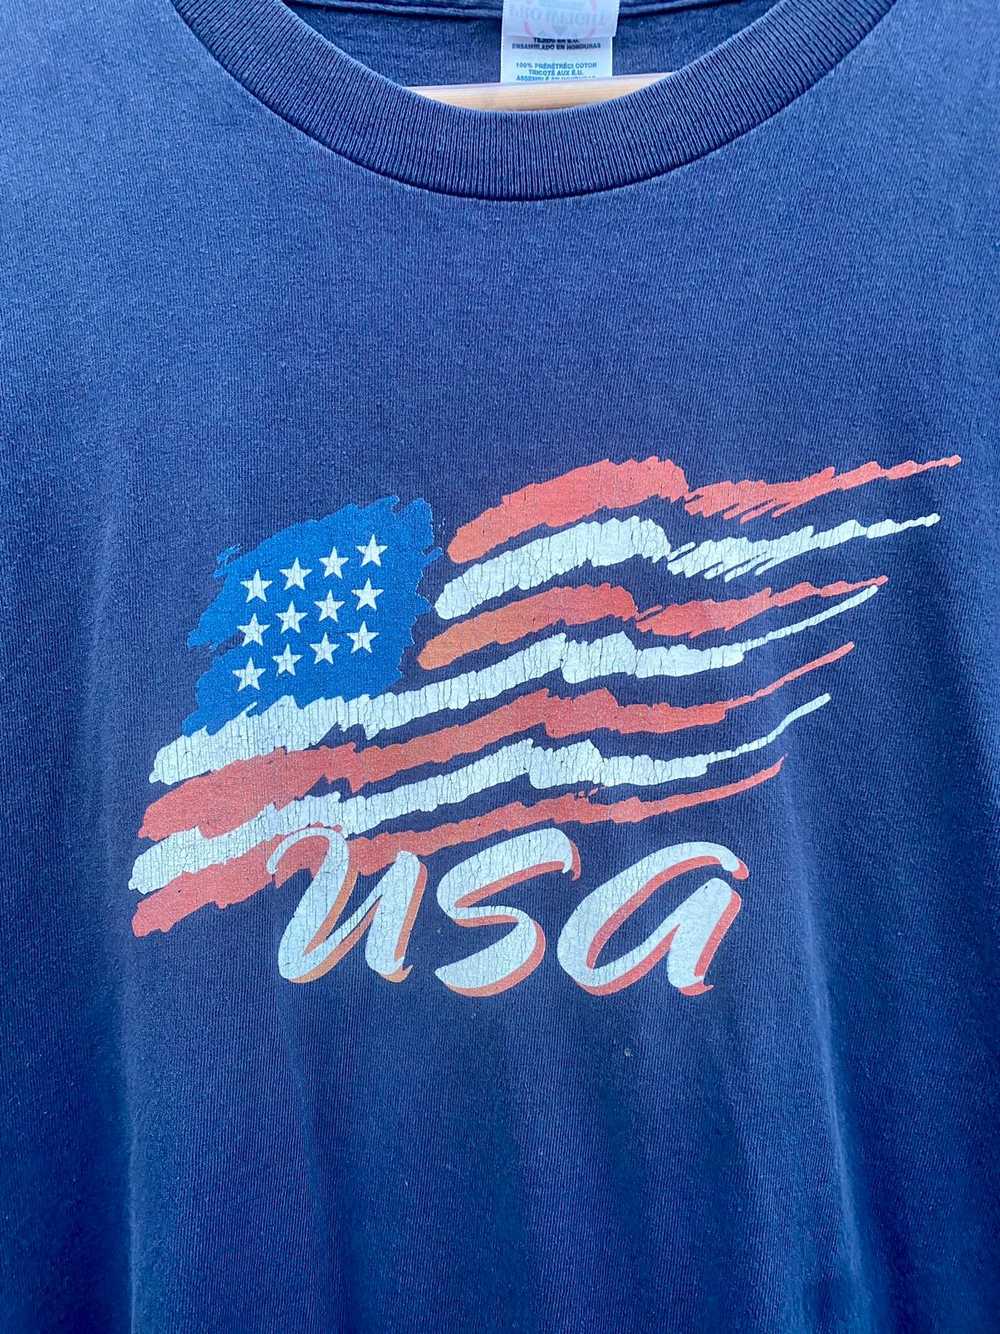 Delta × Vintage Vintage USA t-shirt - image 2